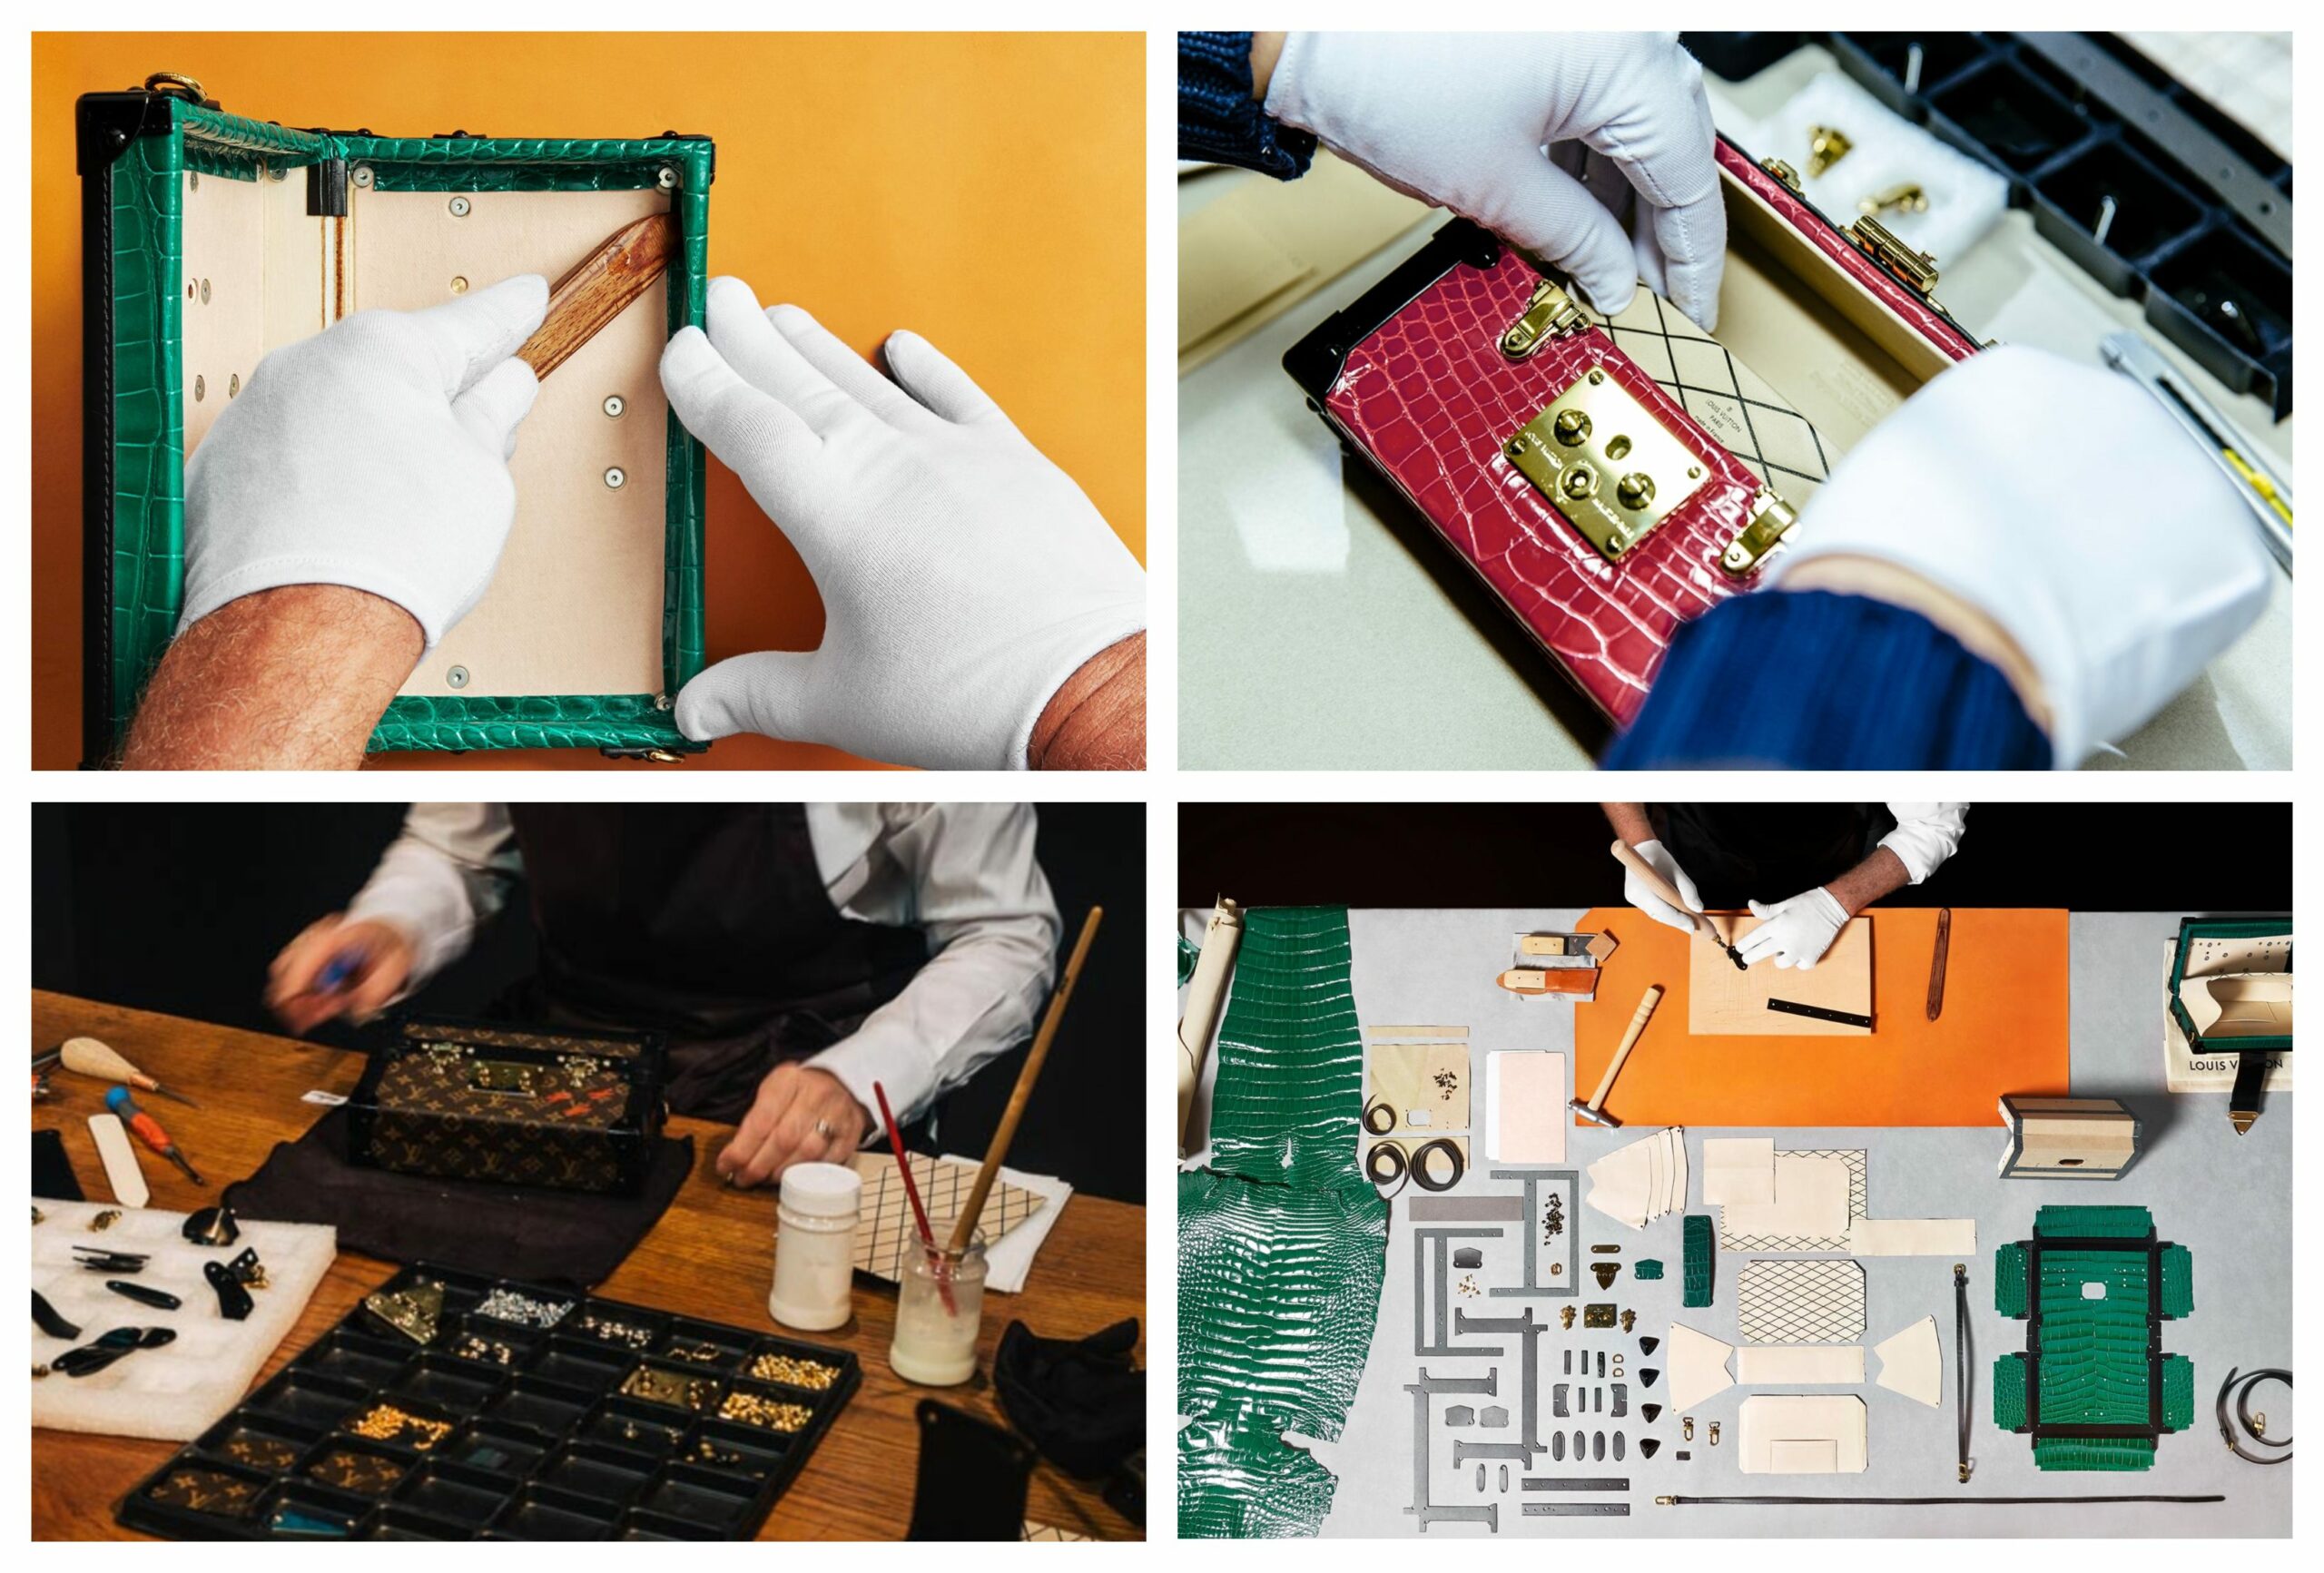 Côté pile. Les simagrées de Louis Vuitton autour de la fabrication du sac à main petite malle. Gants blancs et tout le toutim, forcément vous vous dite “c’est de l’artisanat”. (Source : LVMH)